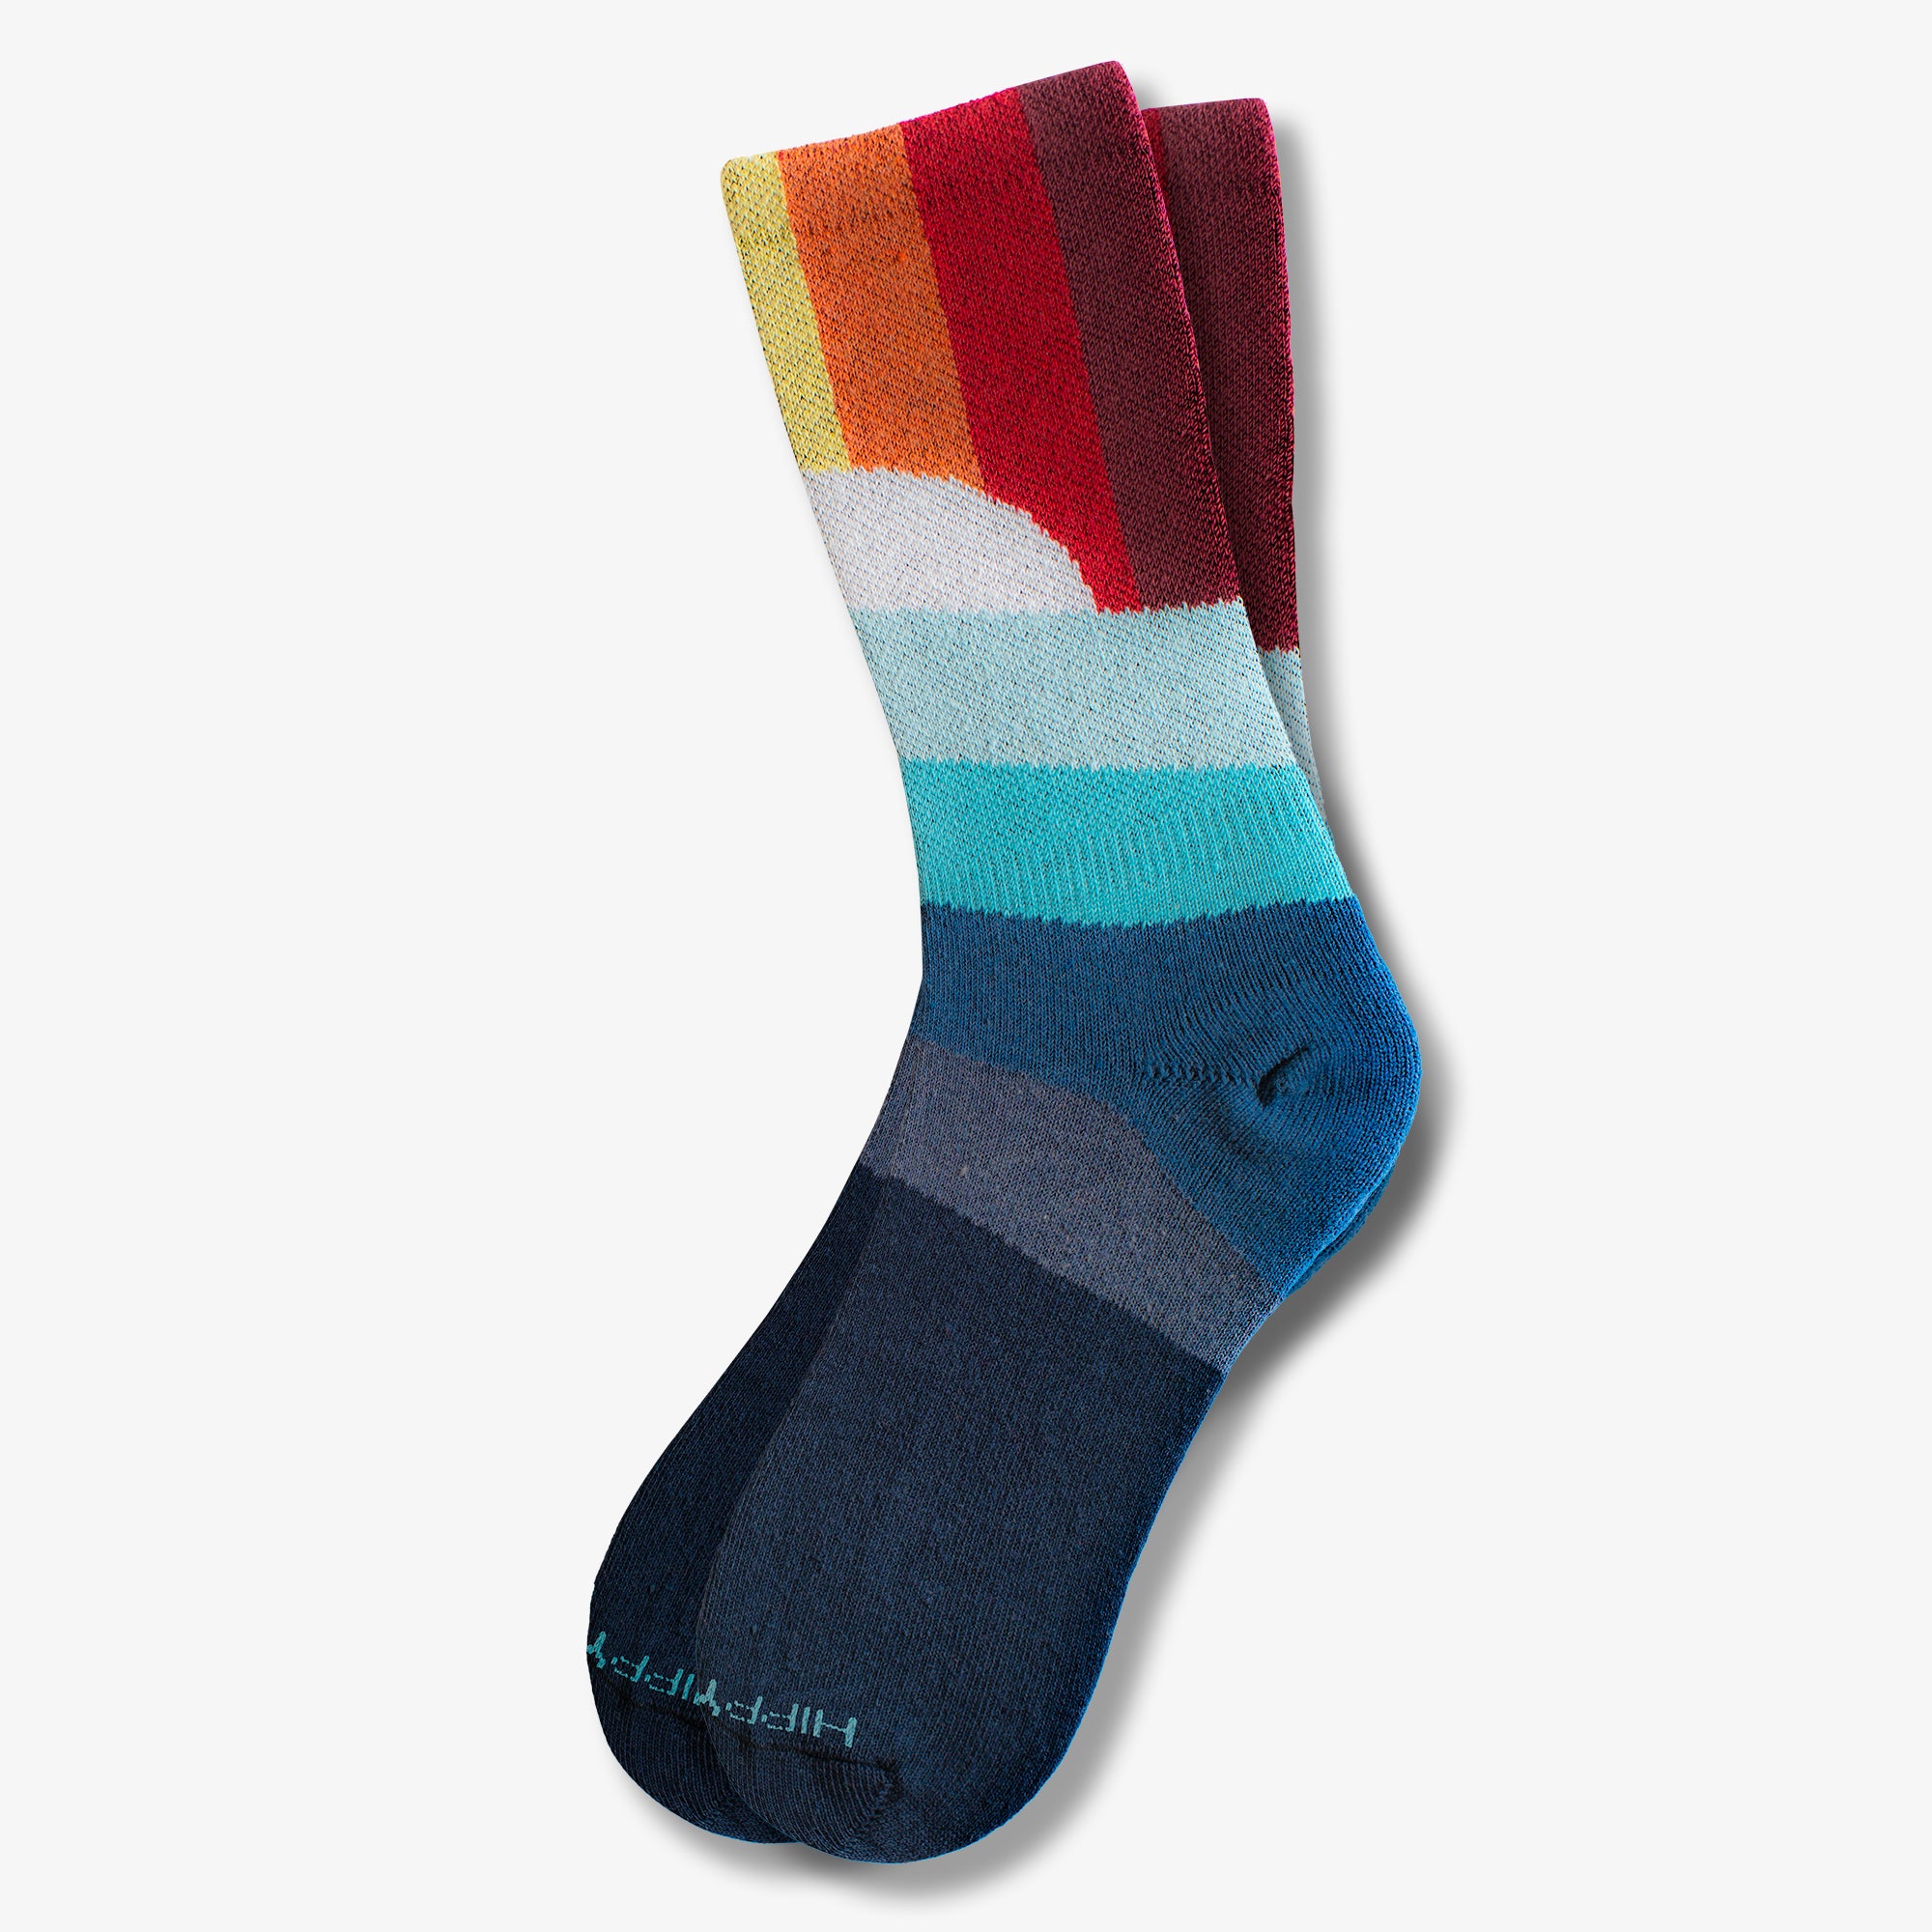 Best Sock Material: Polyester vs Cotton Socks - Hippy Feet